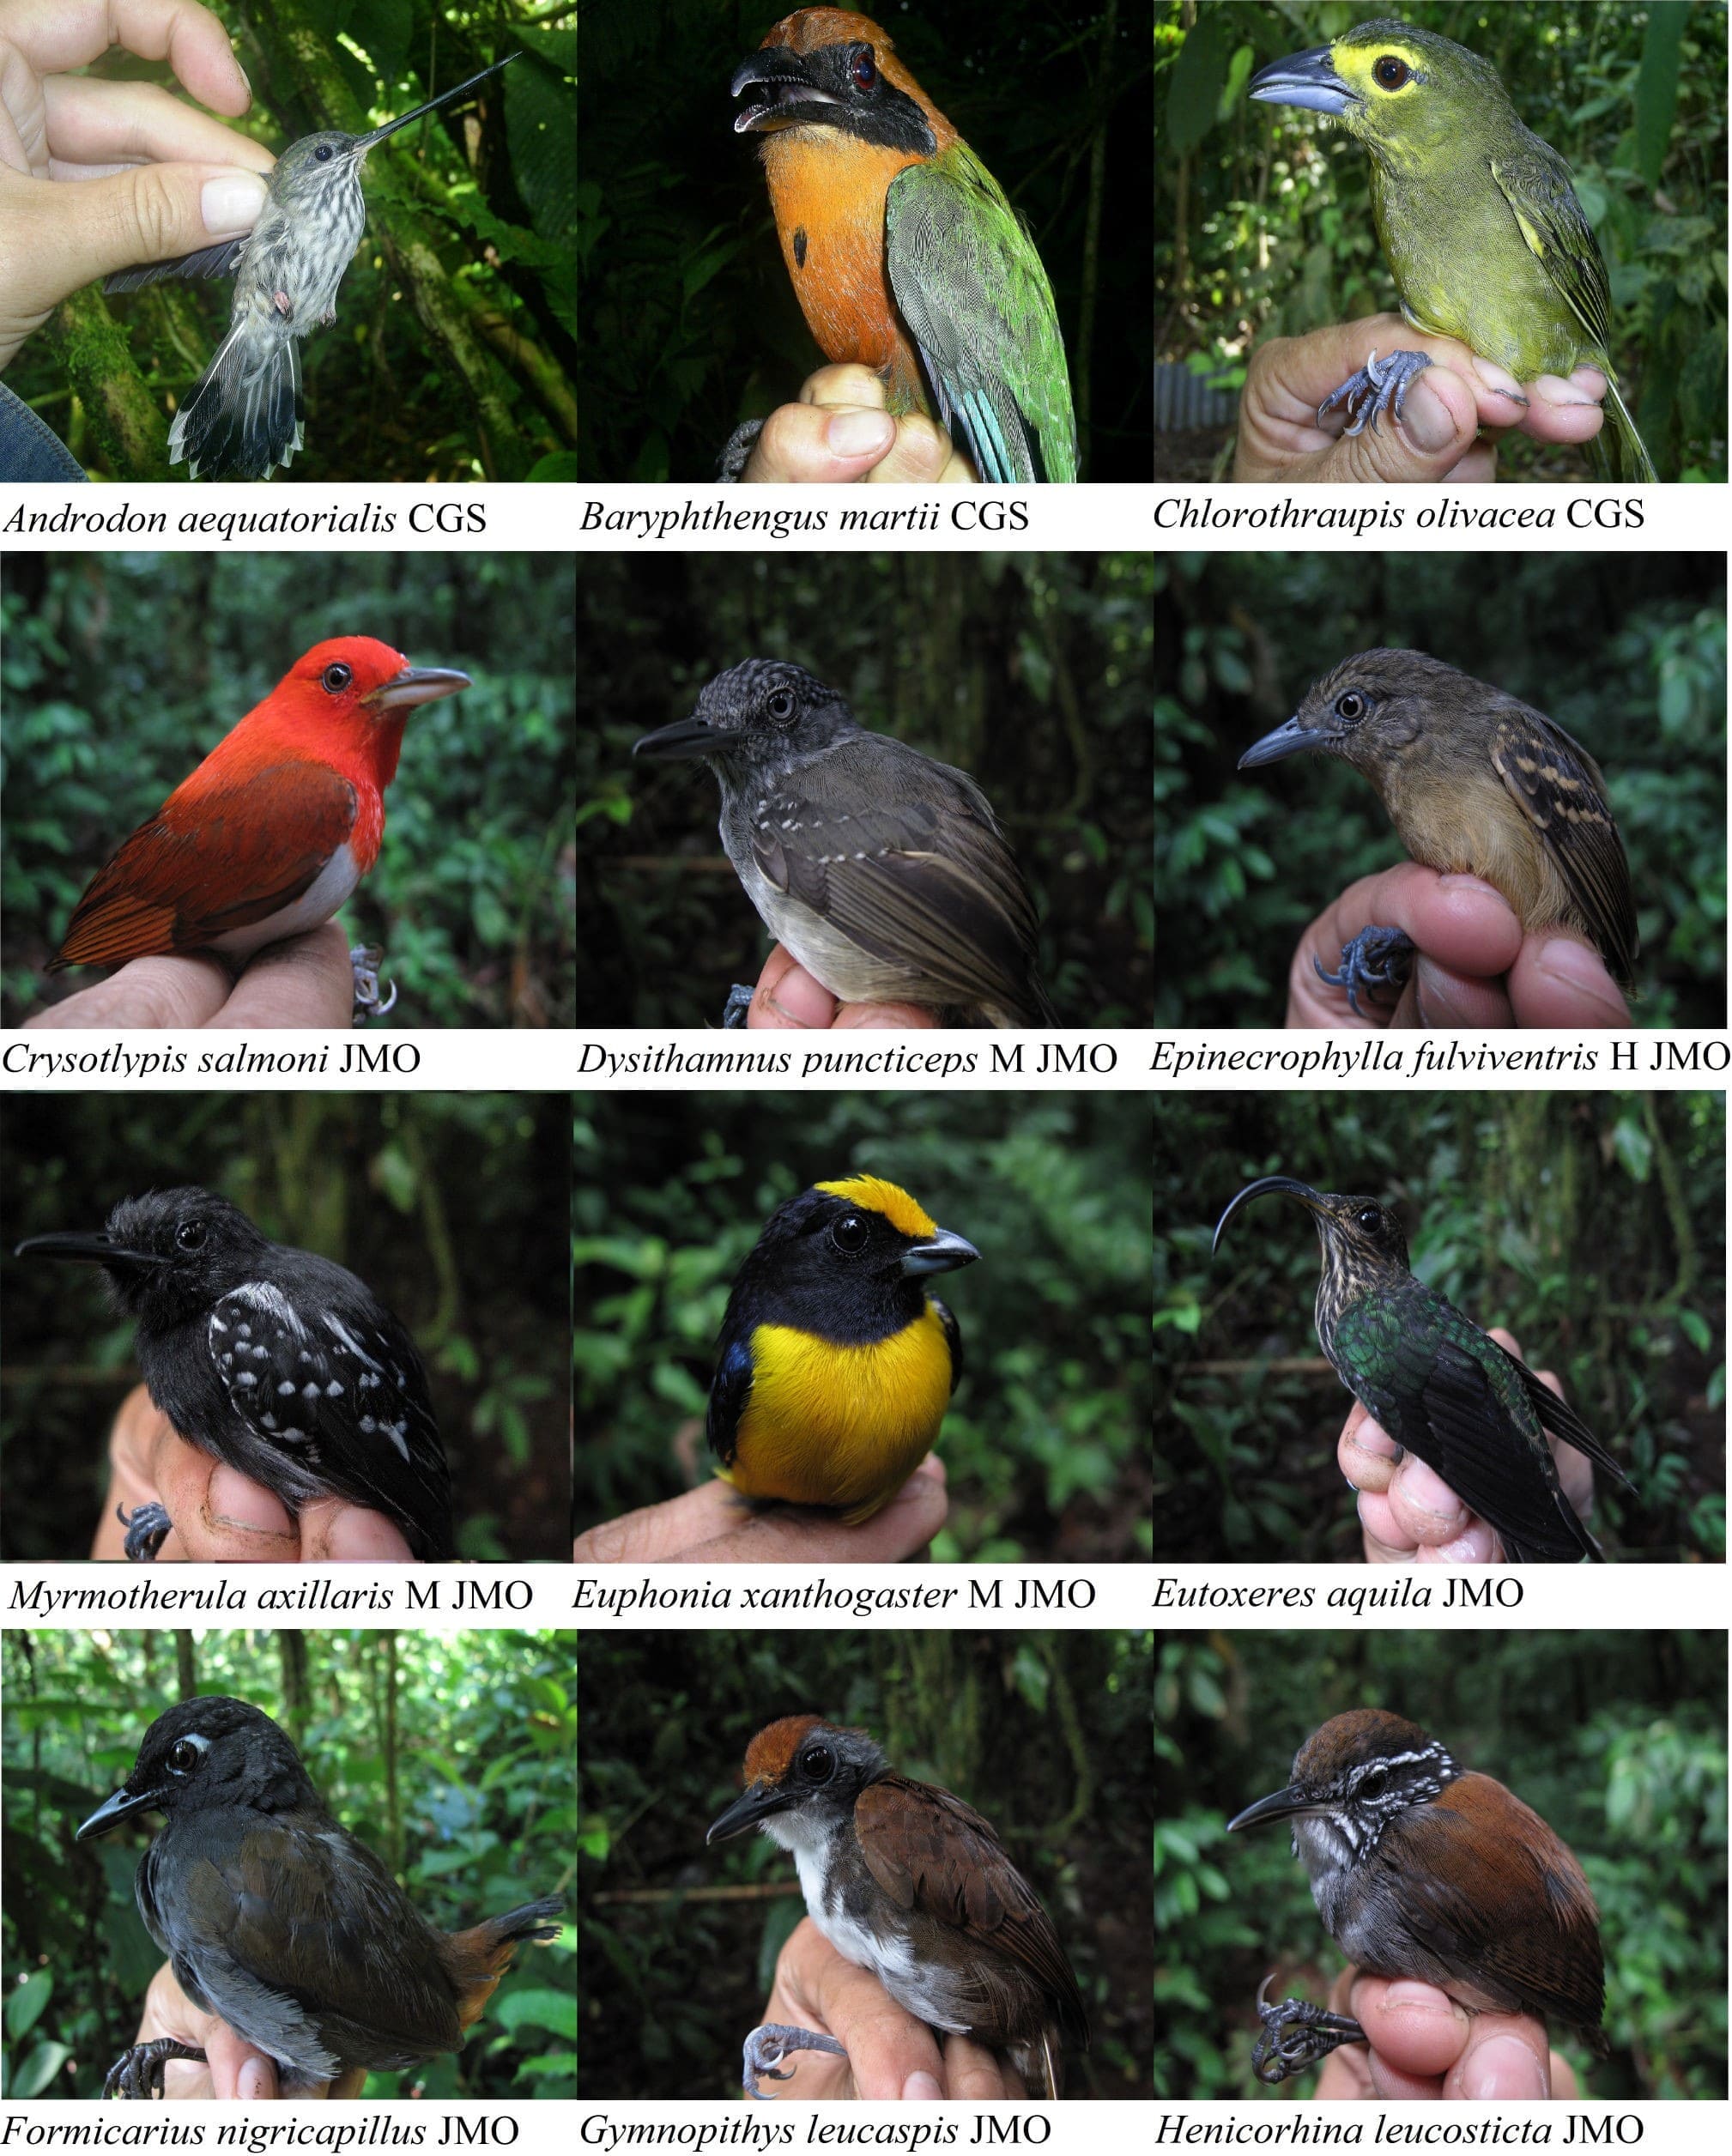 Algunas aves representativas de la
diversidad ornitológica de Tobar Donoso, Carchi, Ecuador. H = hembra, M =
macho. Fotografías por Javier Mena Olmedo (JMO) y César Garzón Santomaro (CGS).